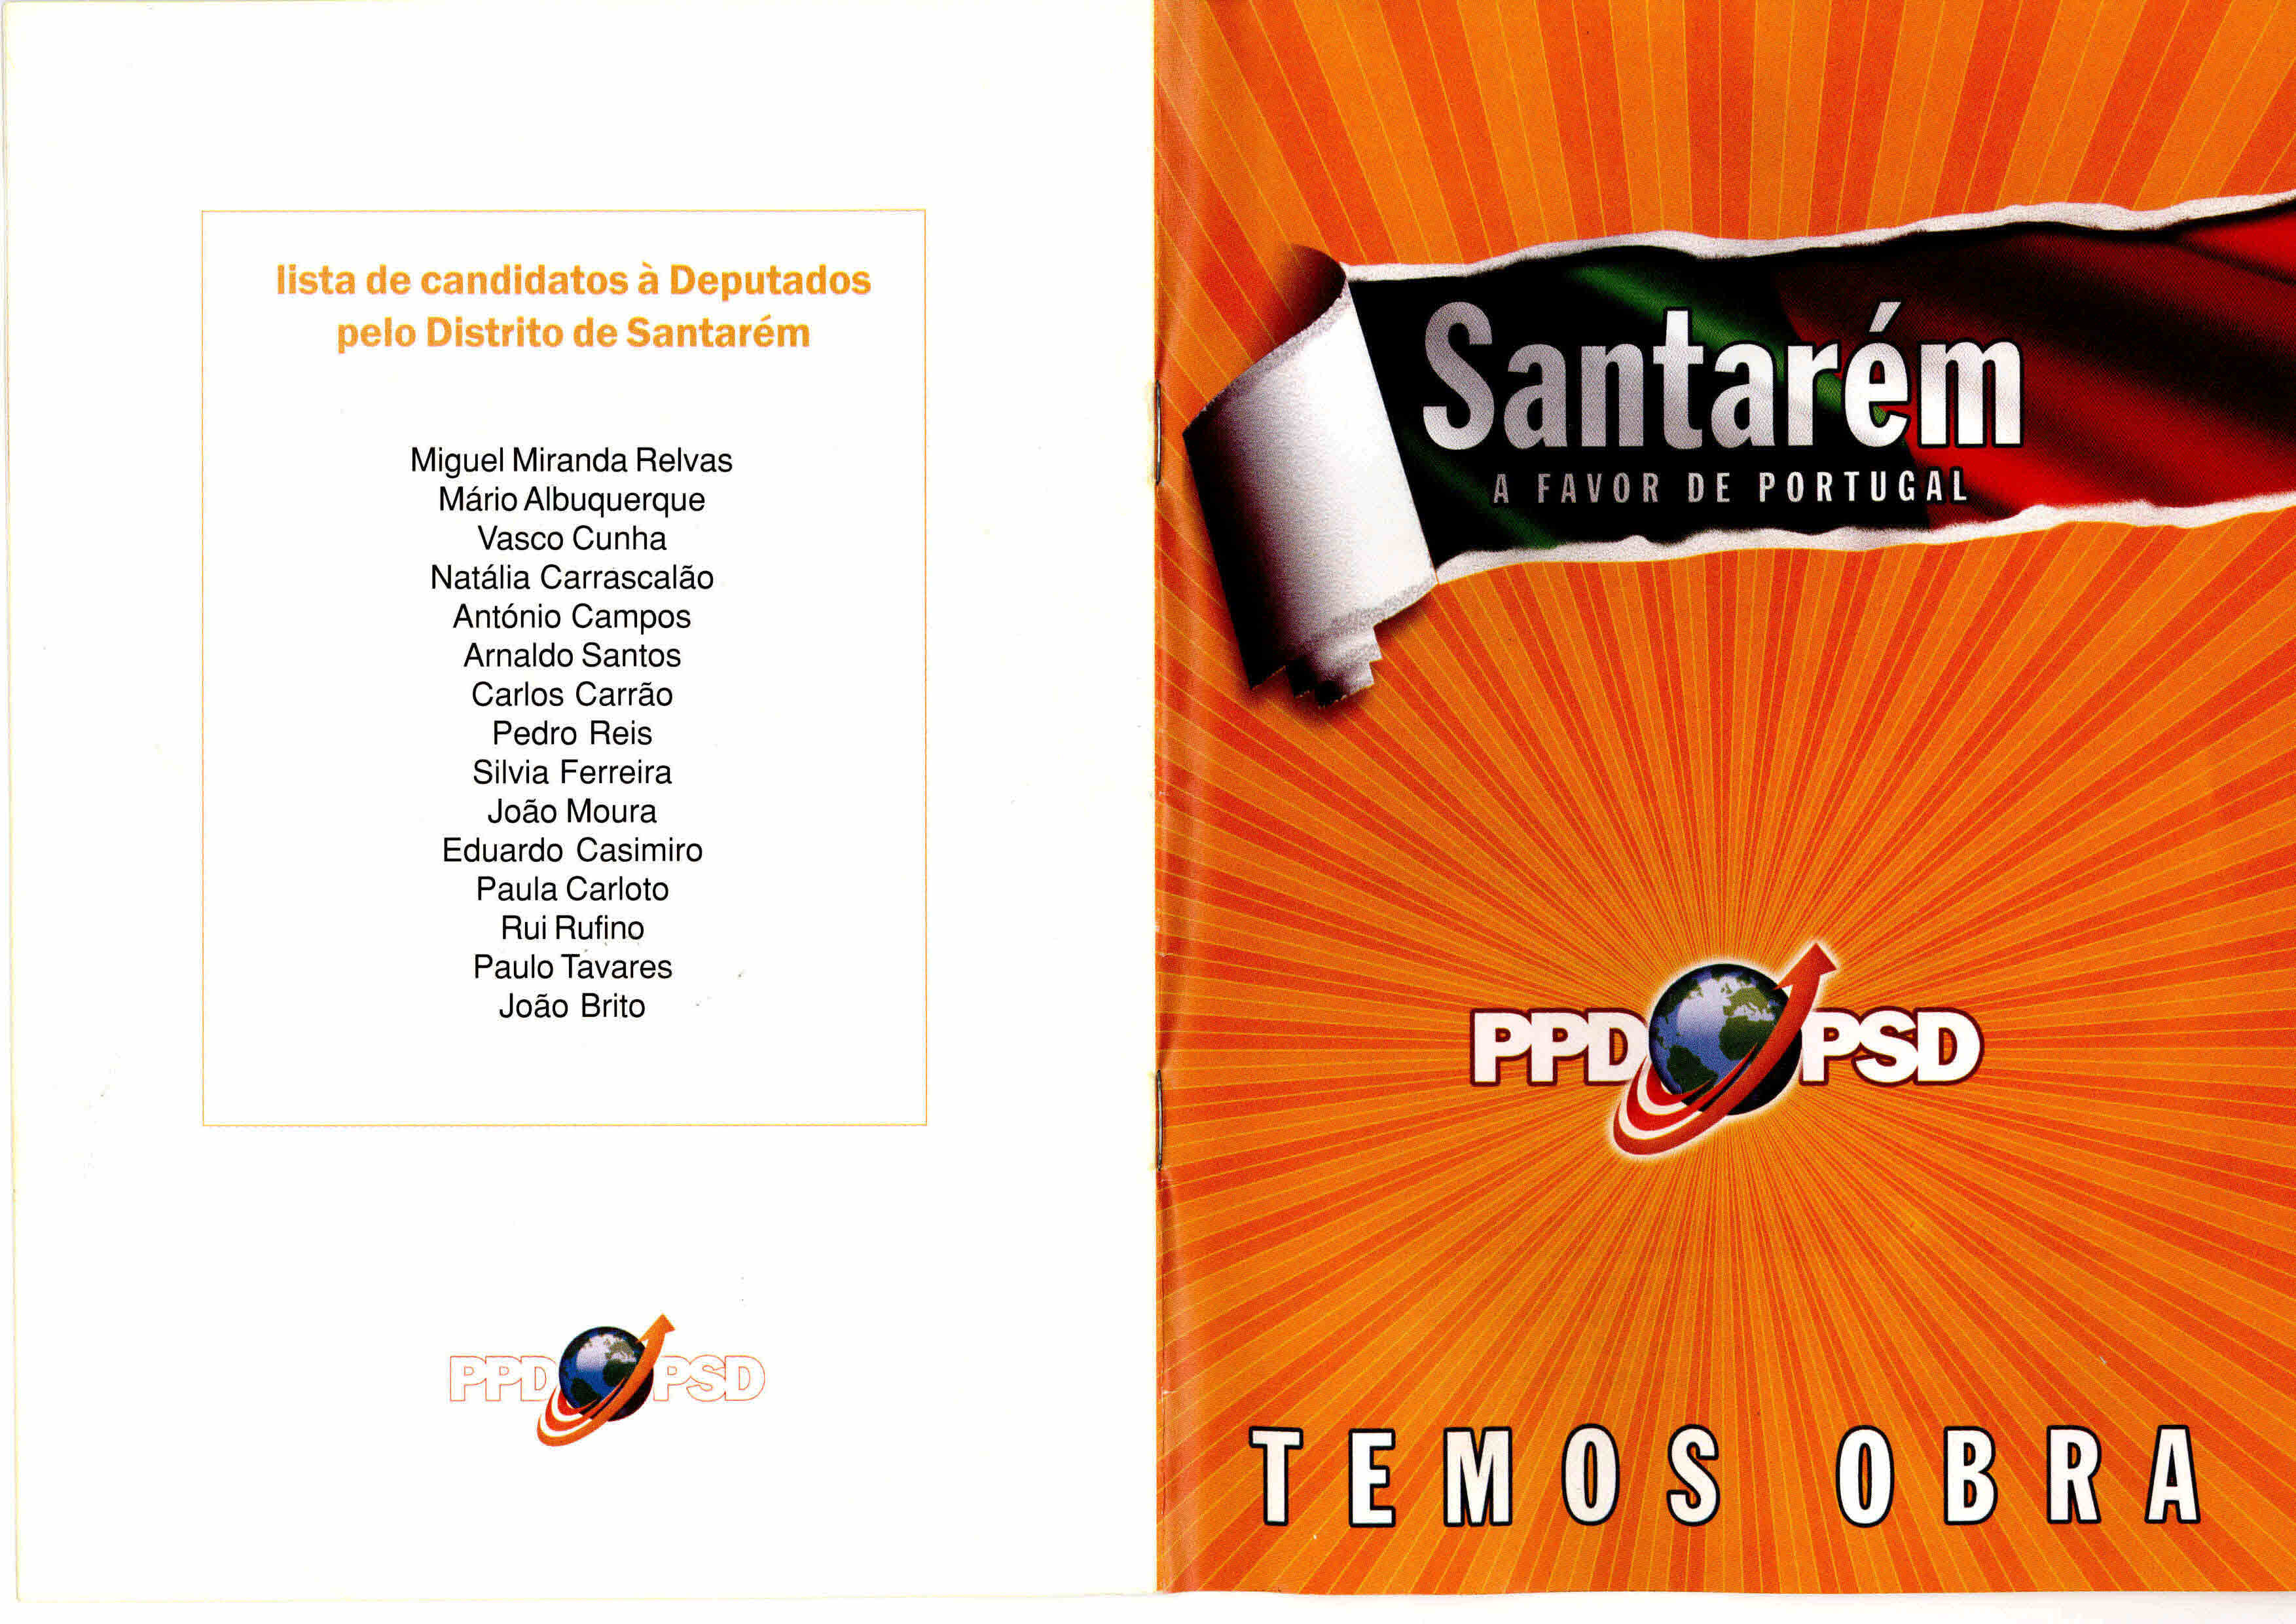 Copy of Temos obra – PSD – Santarém 2005 (2)